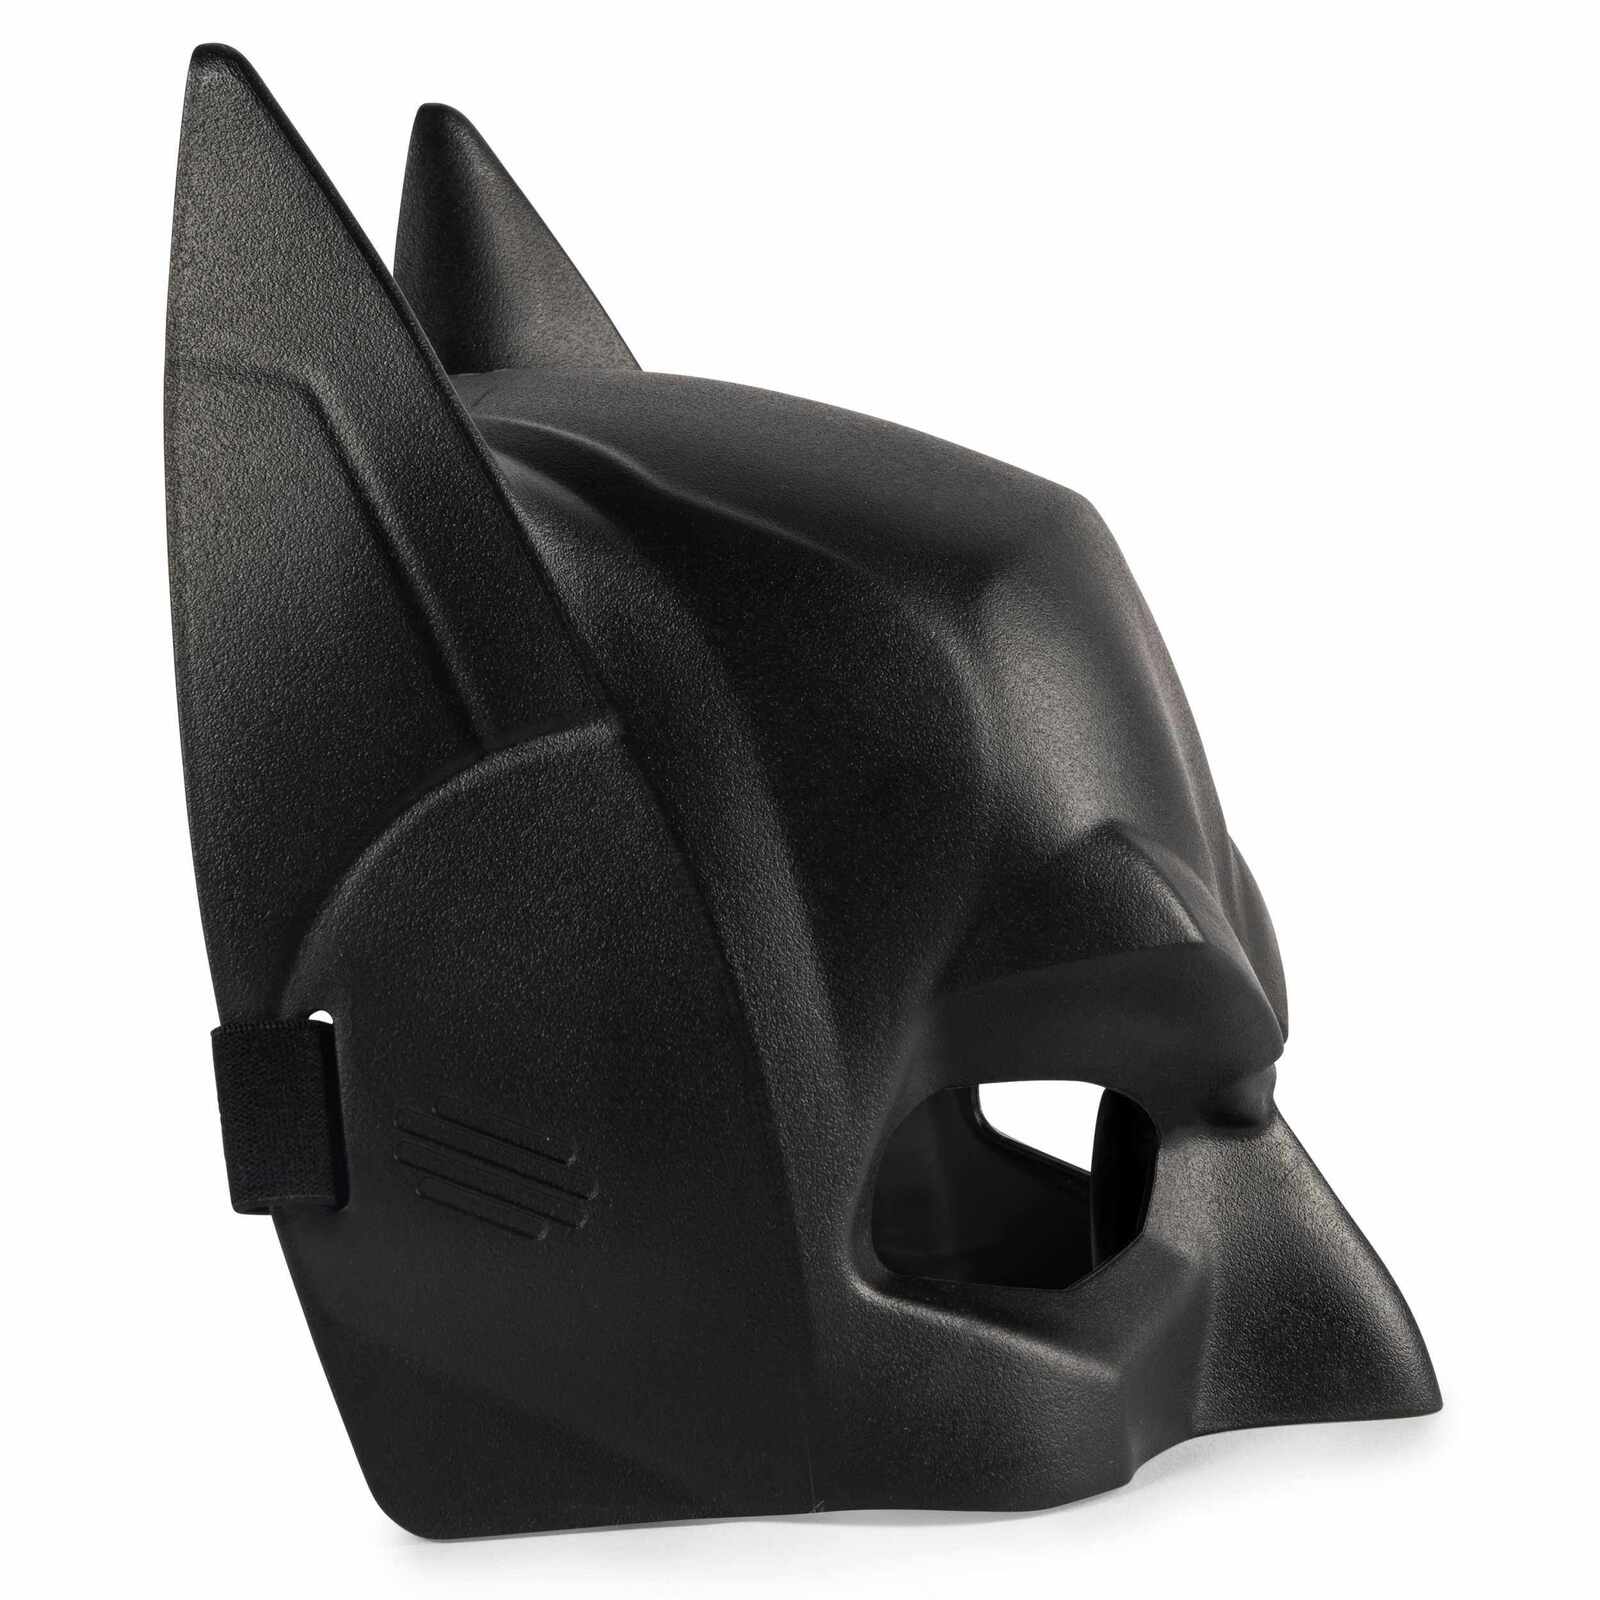 DC Comics Mask - Batman